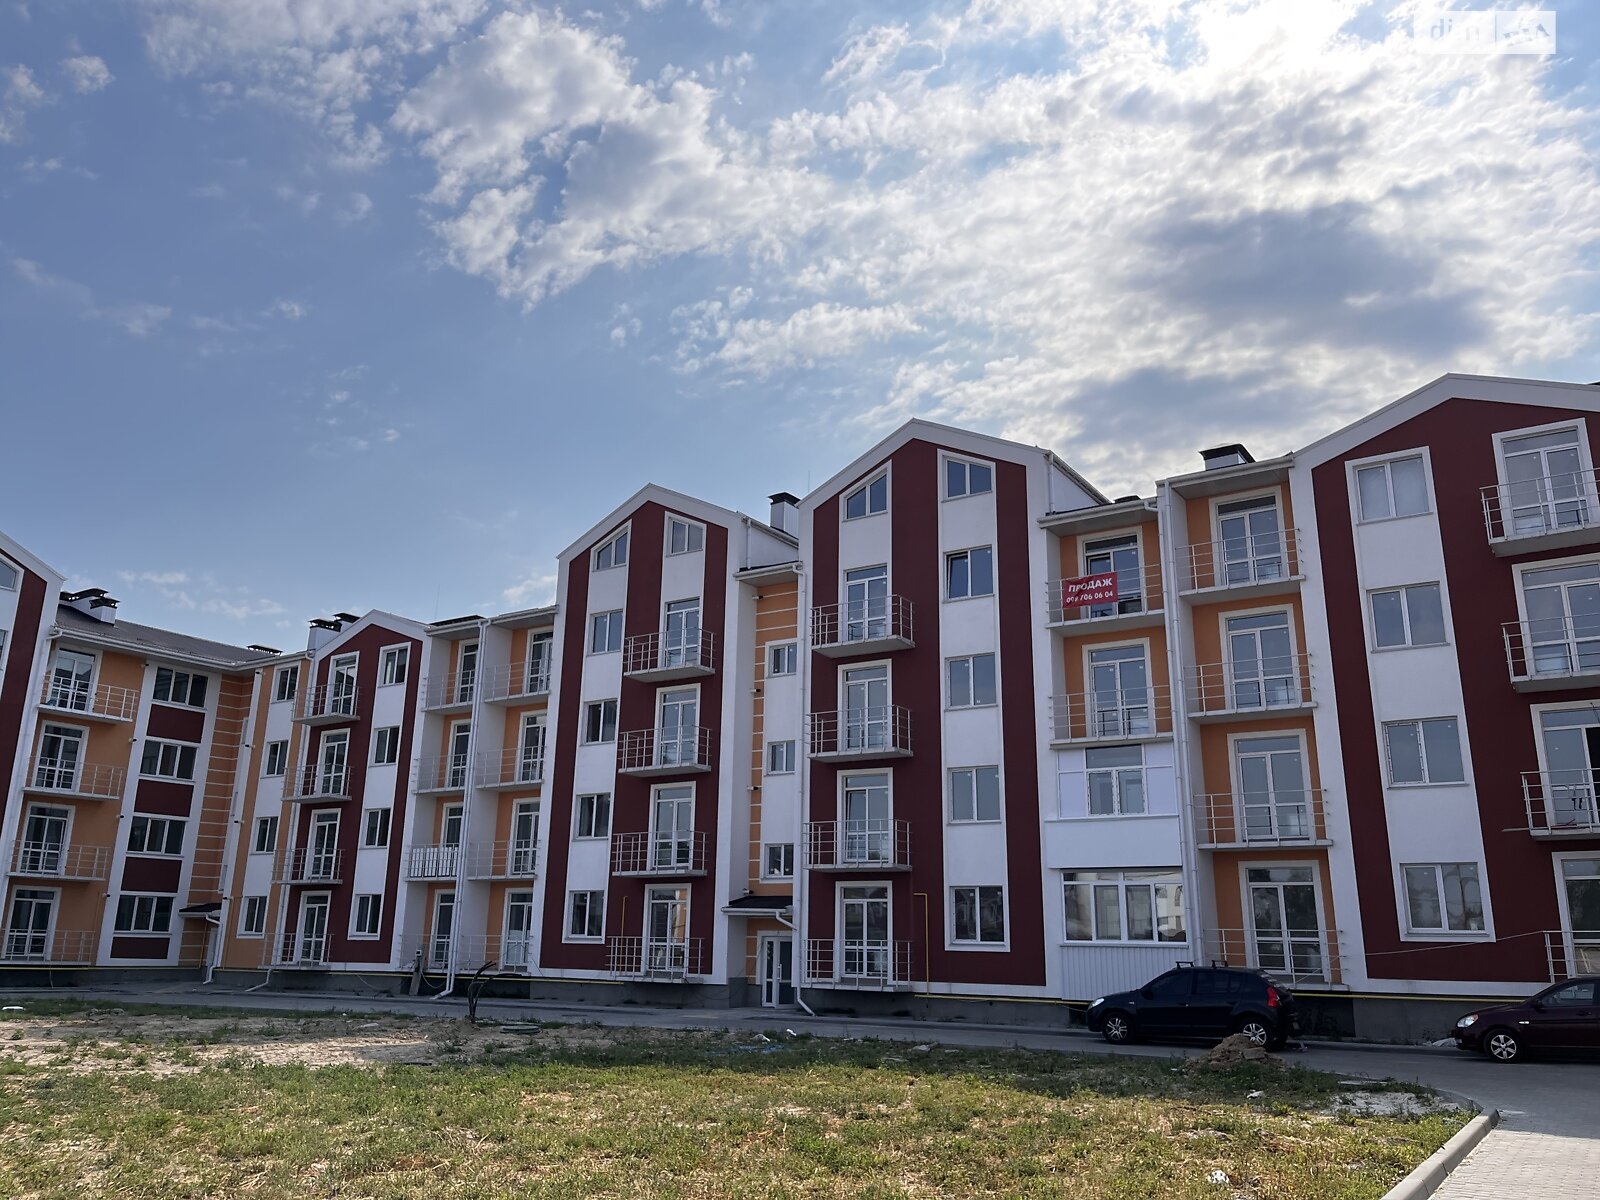 Продажа трехкомнатной квартиры в Белогородке, на ул. Гетьманская 45, фото 1